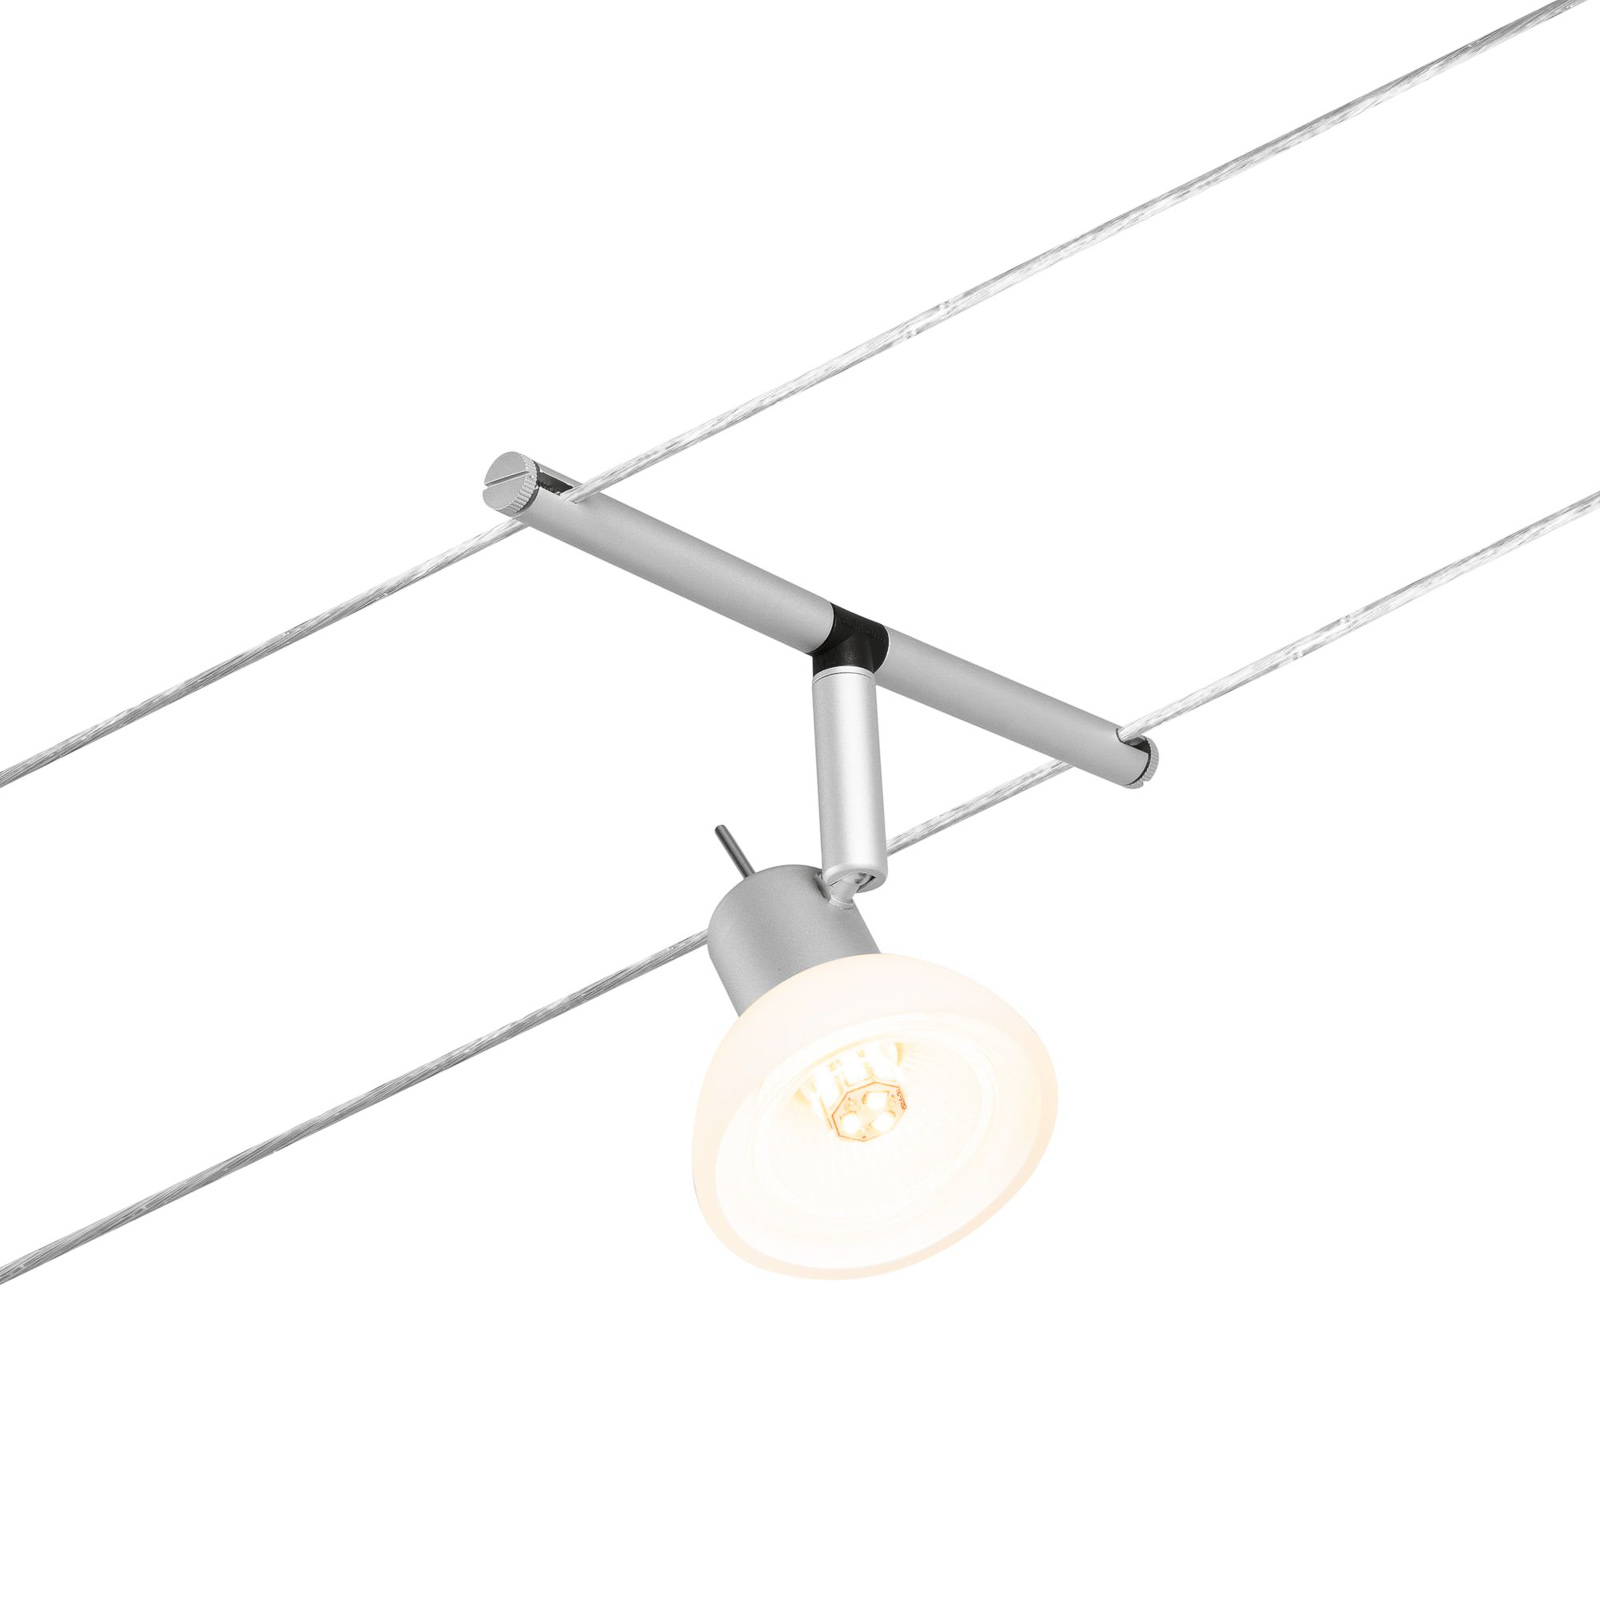 Paulmann Wire Sheela lankový systém, 5x, 5 m chrom